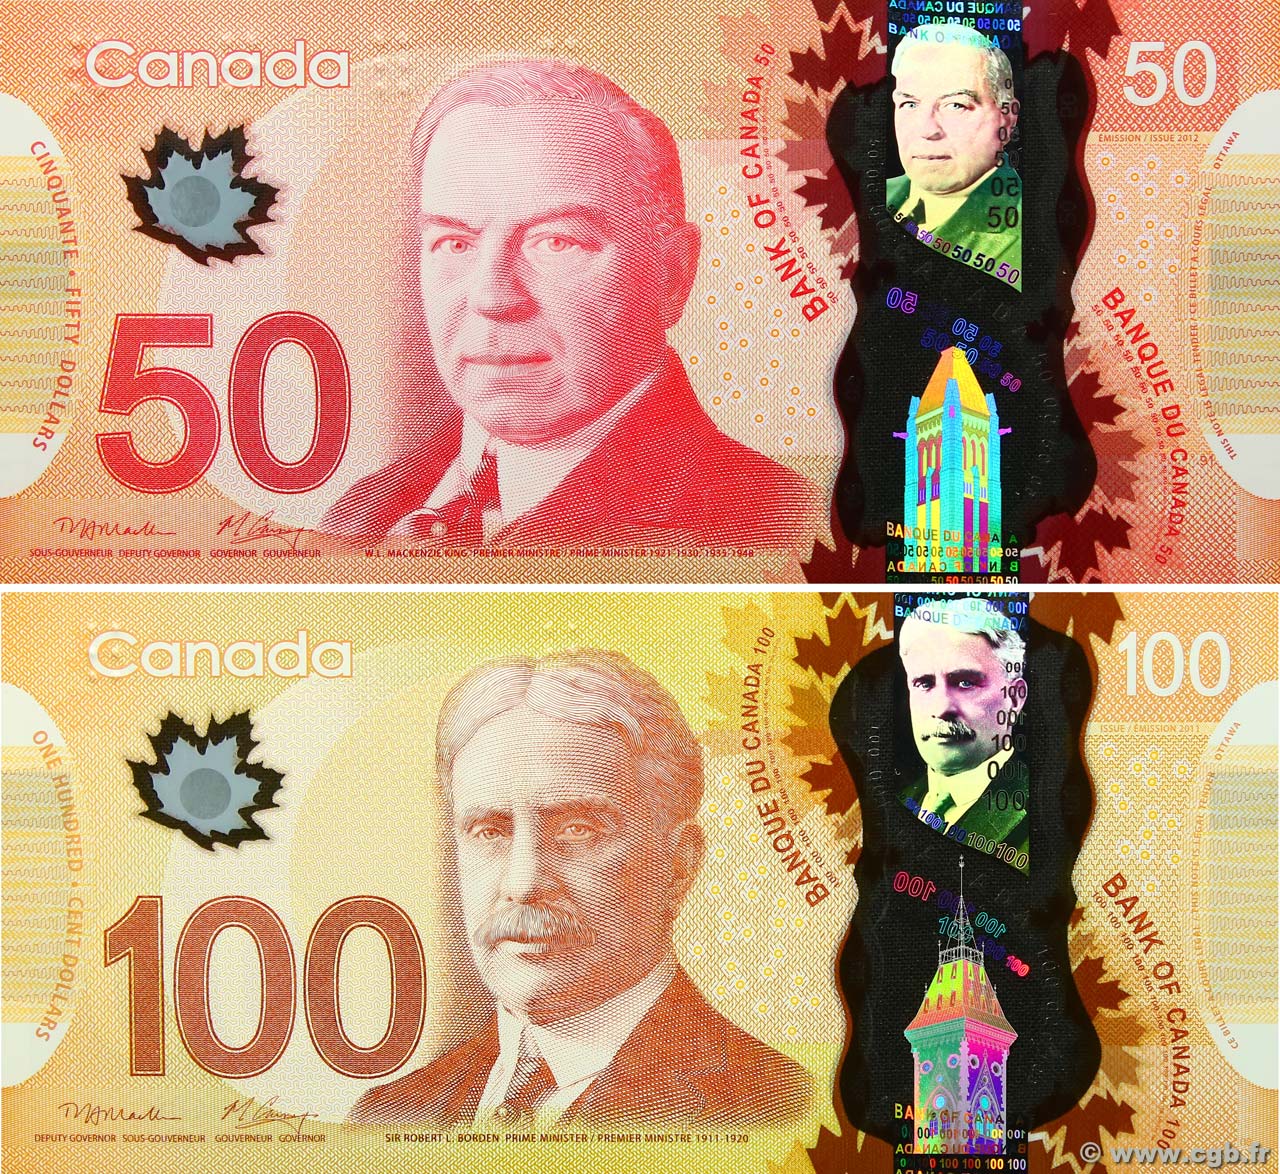 50 et 100 Dollars KANADA  2011 P.109a et P.110a ST